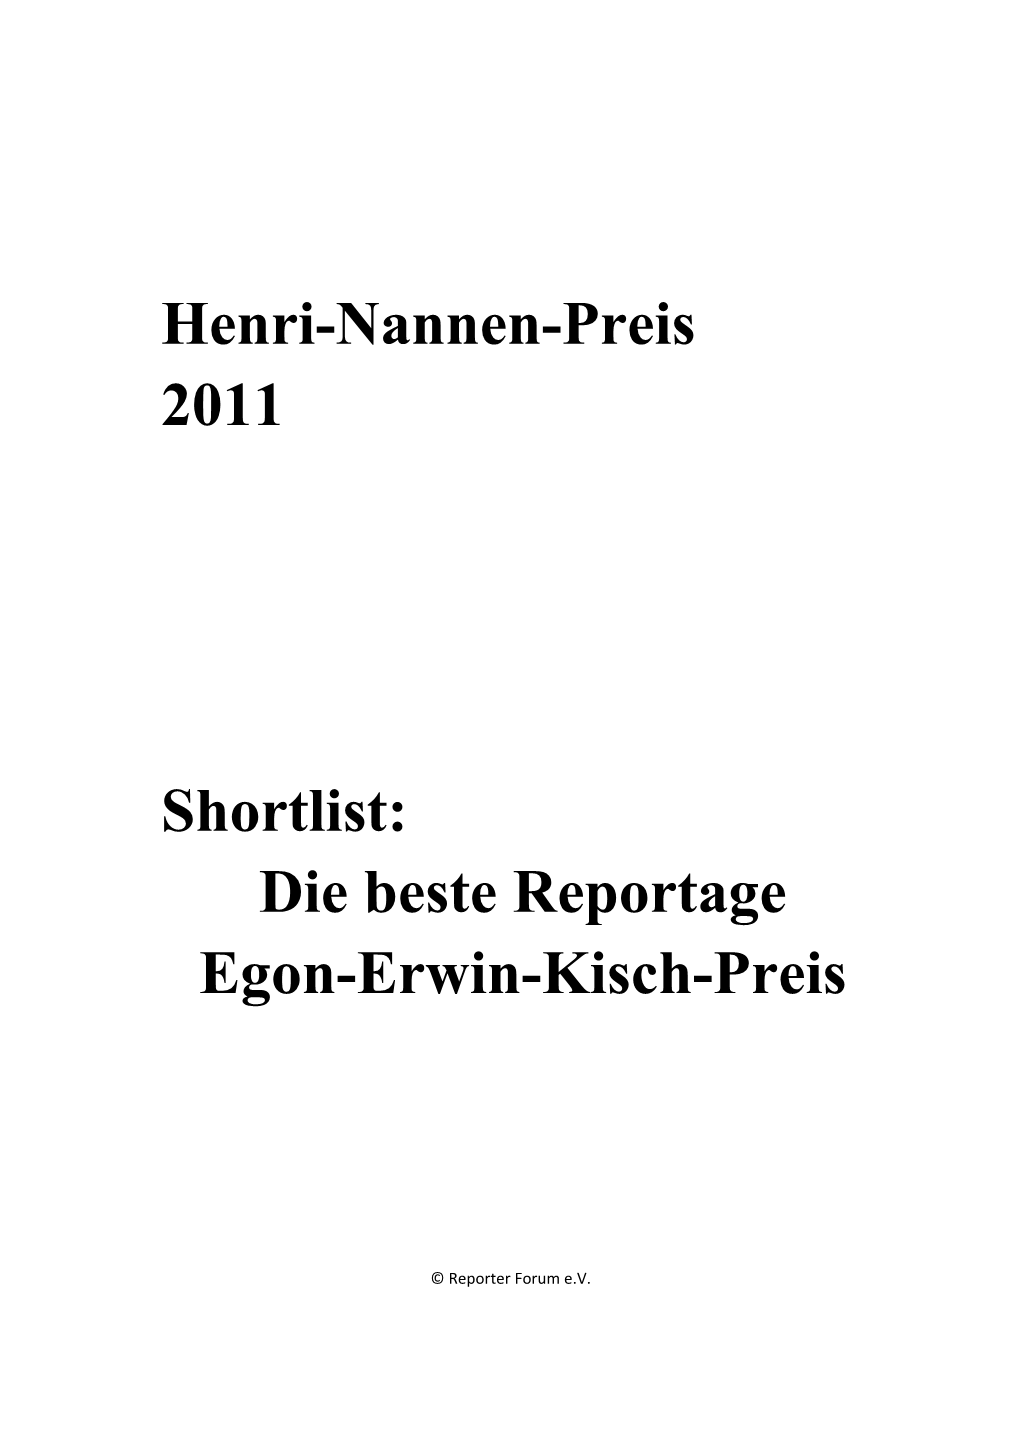 Die Beste Reportage Egon-Erwin-Kisch-Preis